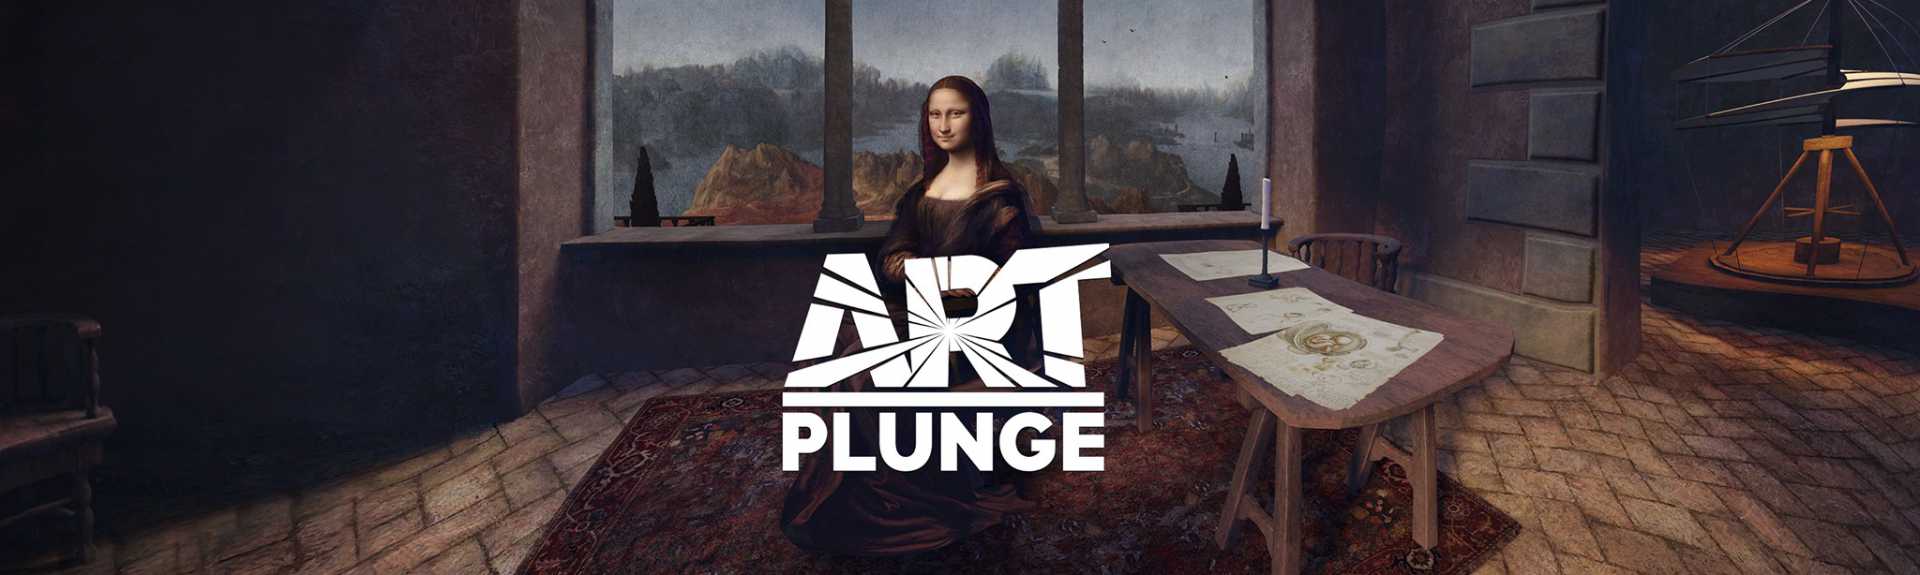 Art Plunge